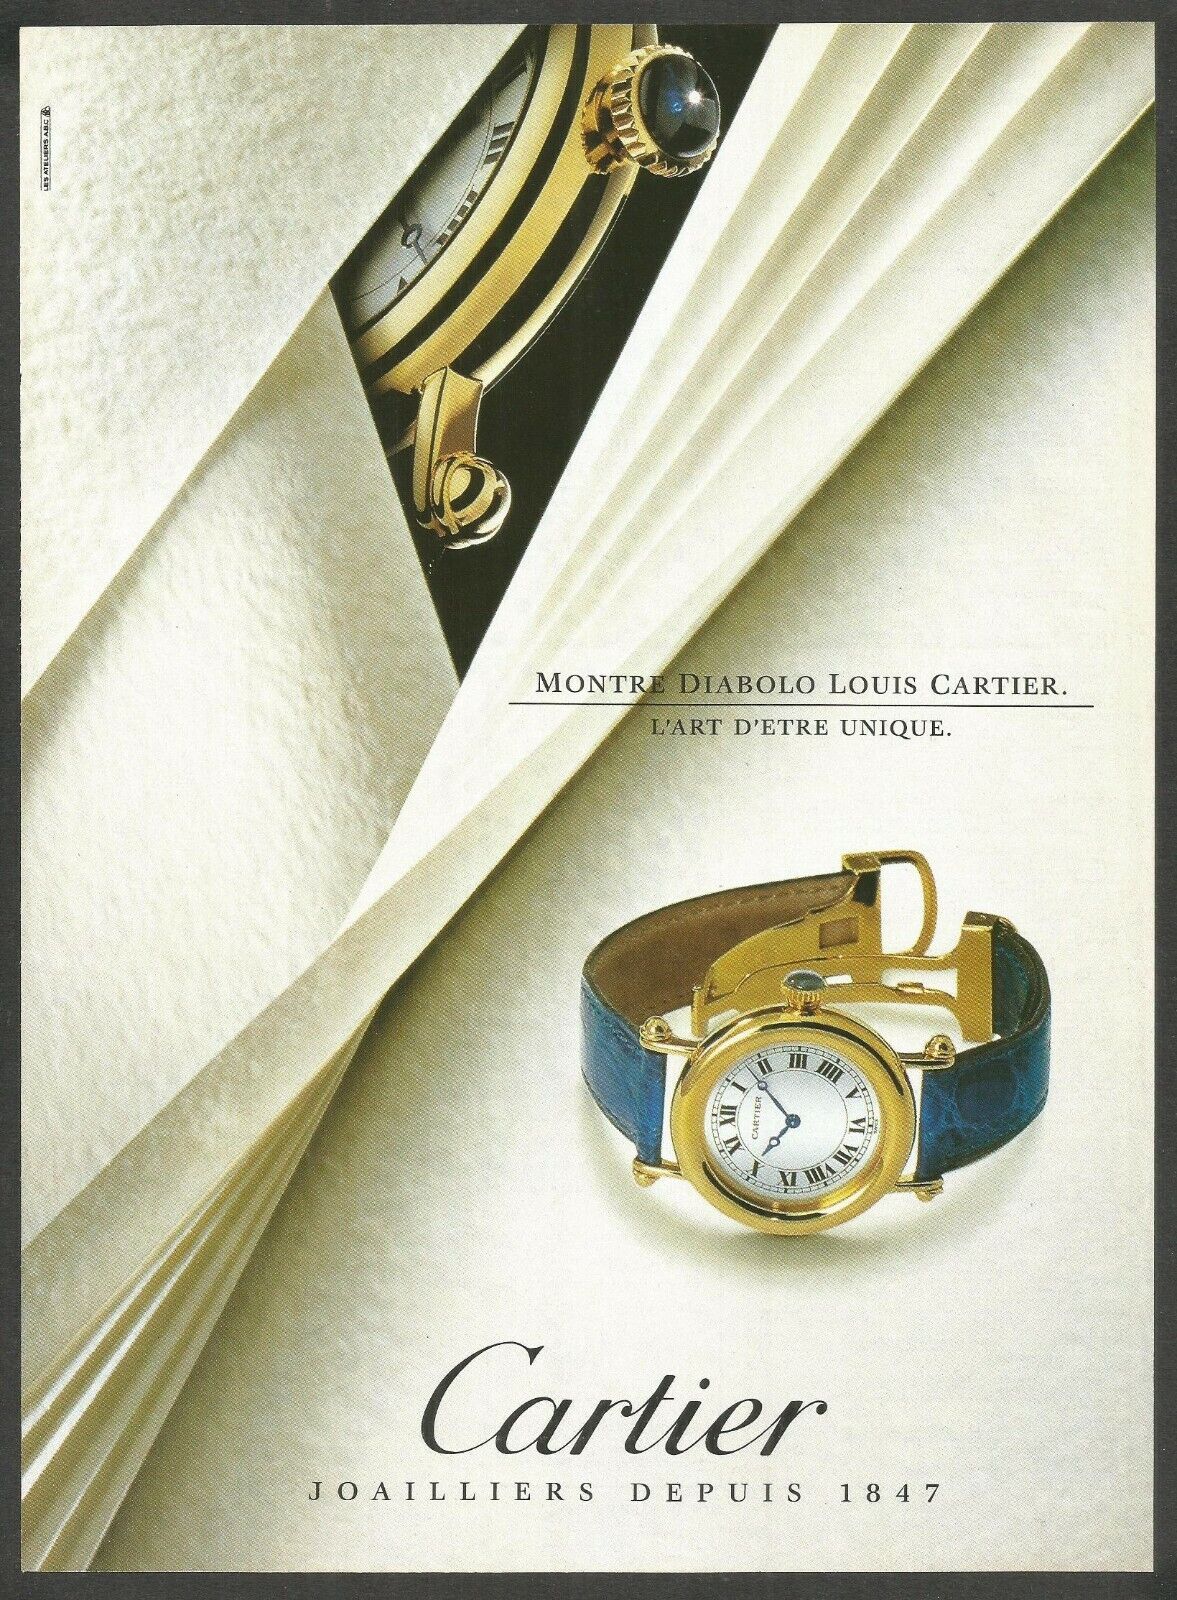 CARTIER Montre Diabolo Louis Cartier - 1993 Vintage Print Ad